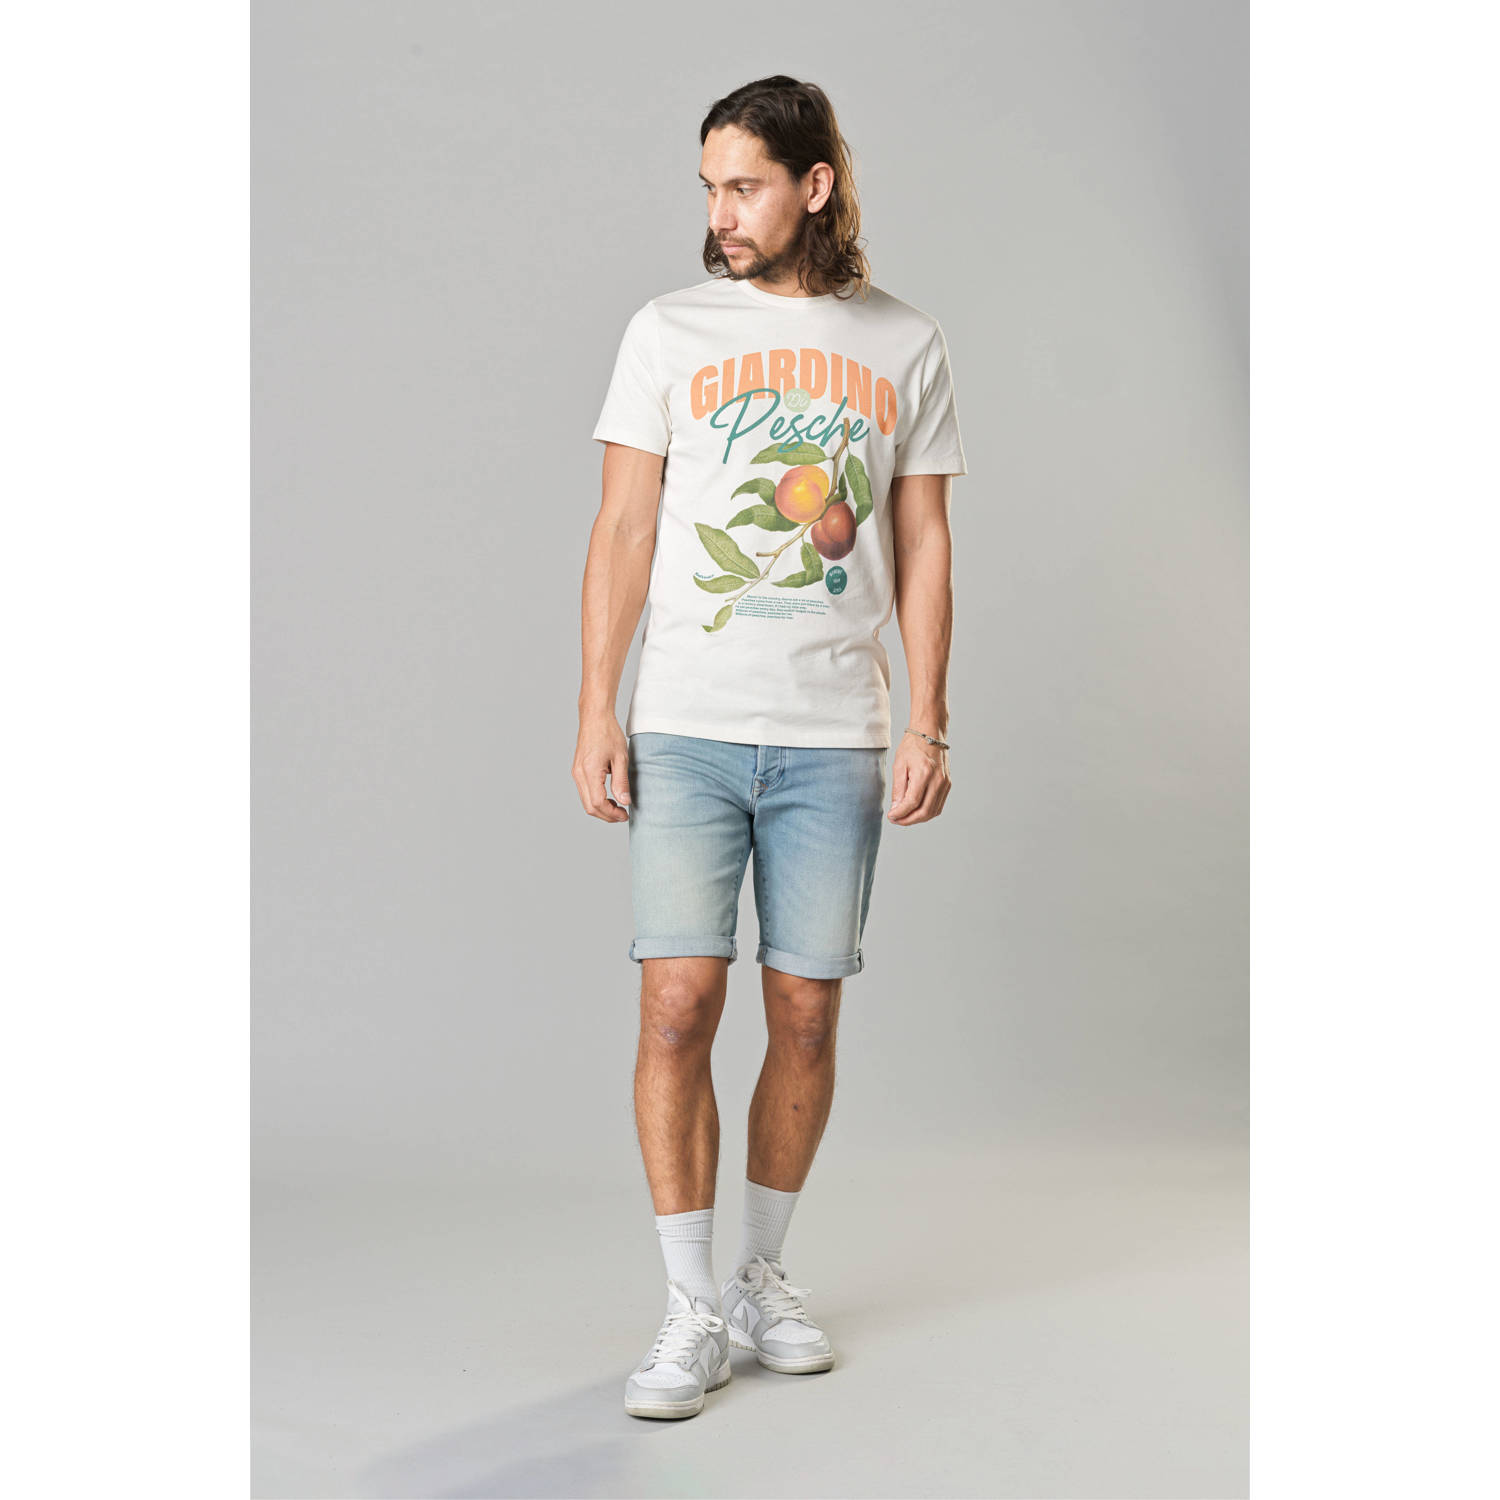 Kultivate T-shirt GIARDINO met printopdruk egret